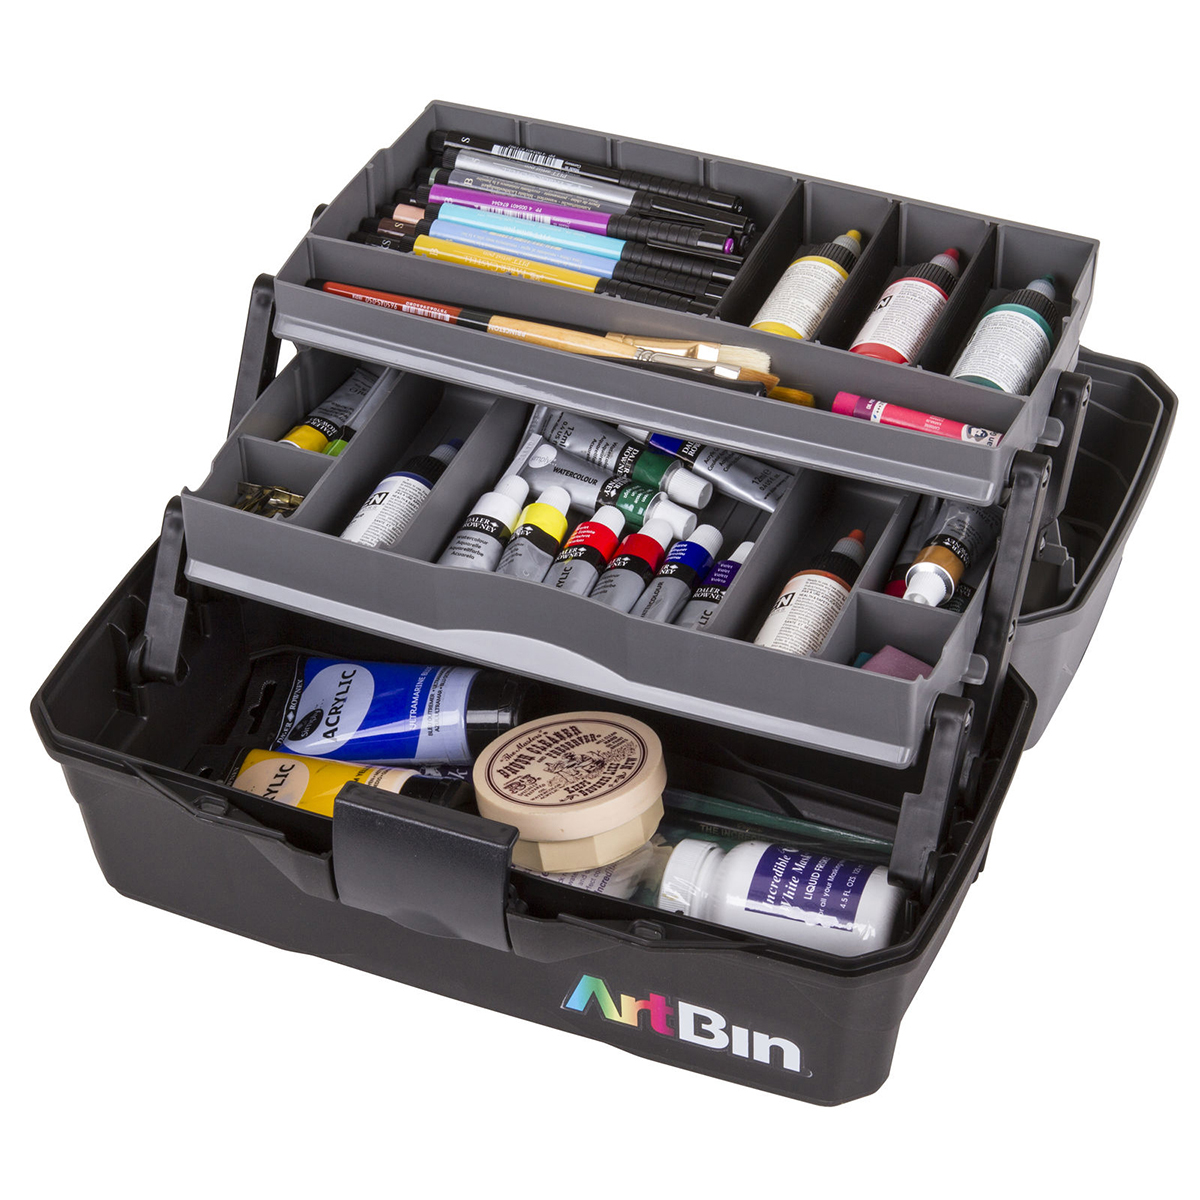 Artbin Solutions Box